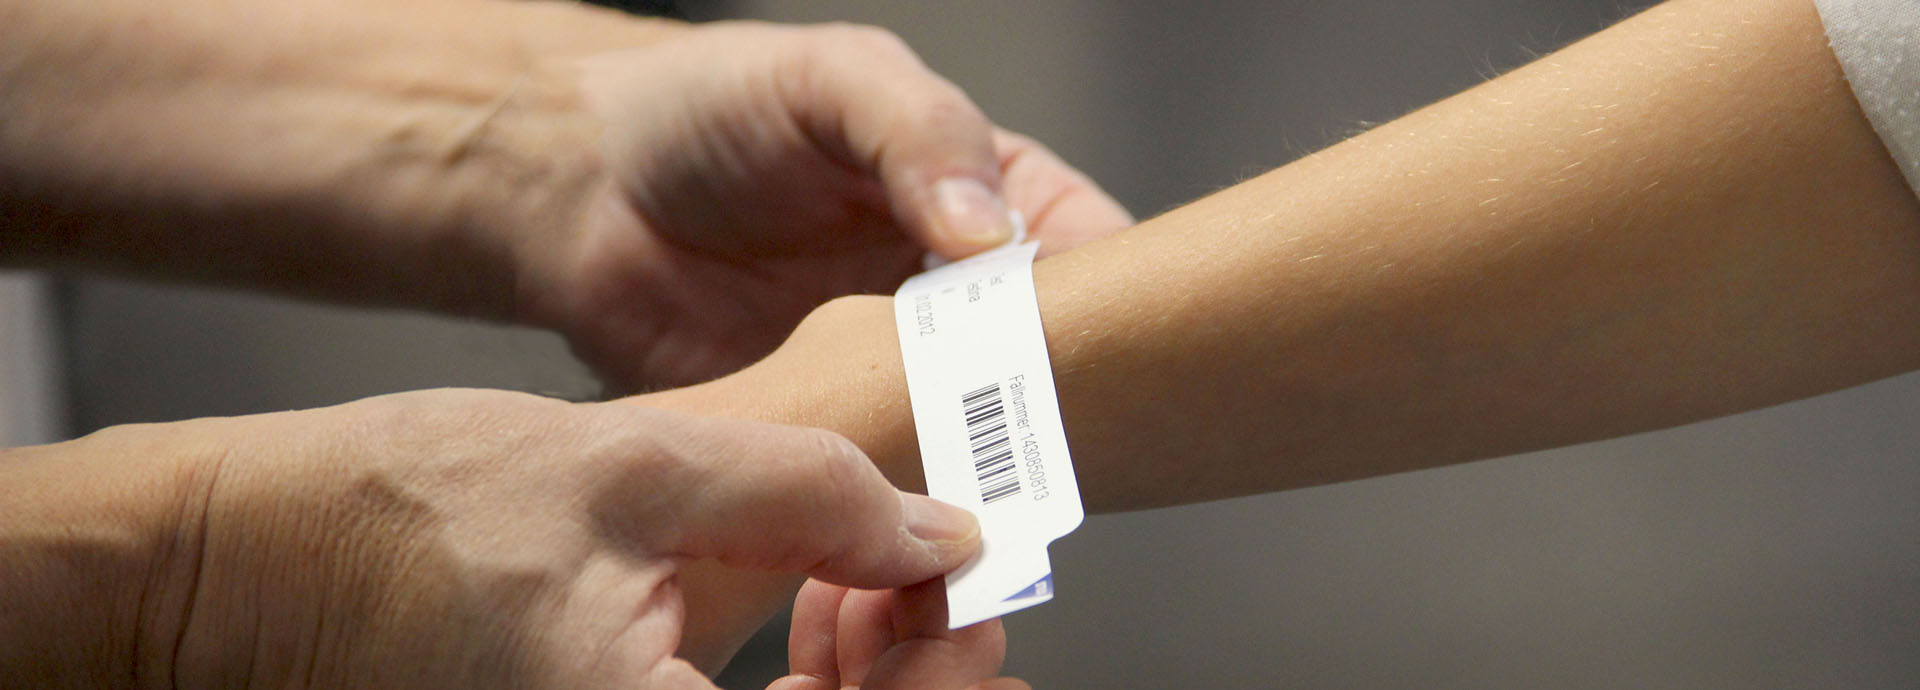 Patientenarmband wird am Handgelenk einer Patientin befestigt